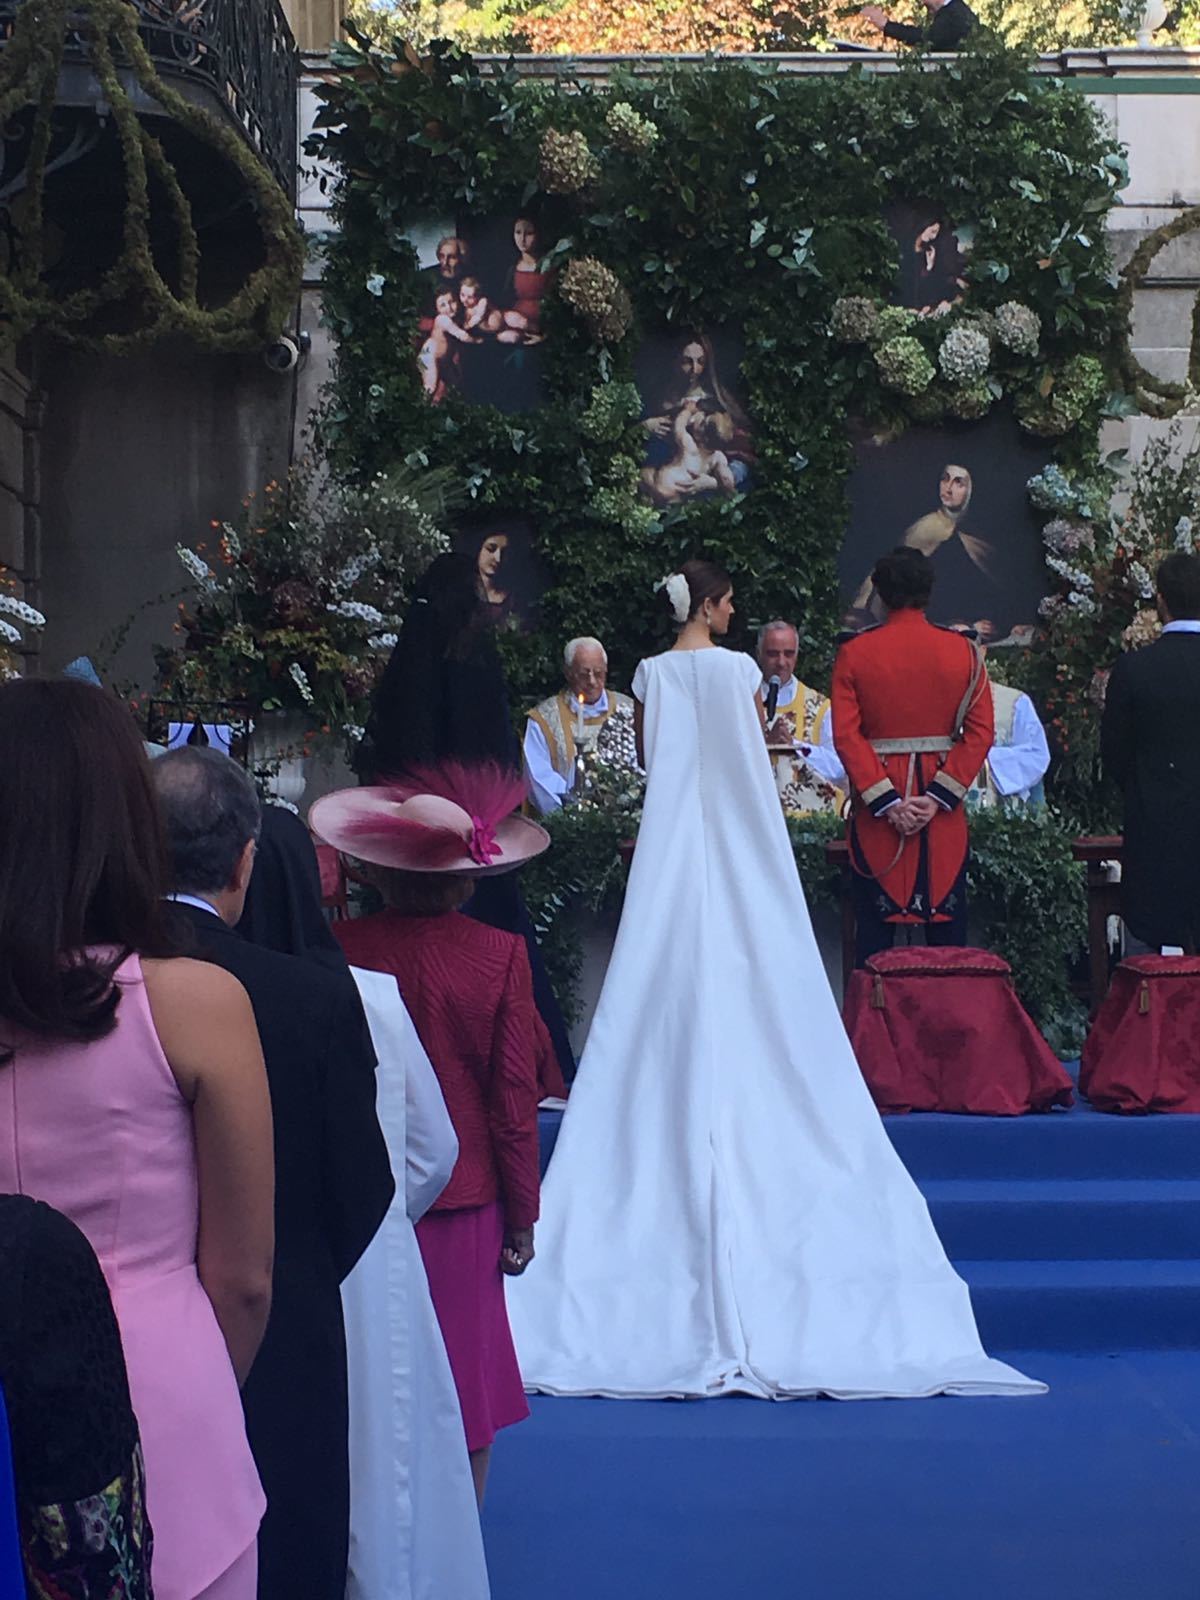 La boda de Sofía Palazuelo y Fernando Fitz-James Stuart en el Palacio de Liria.